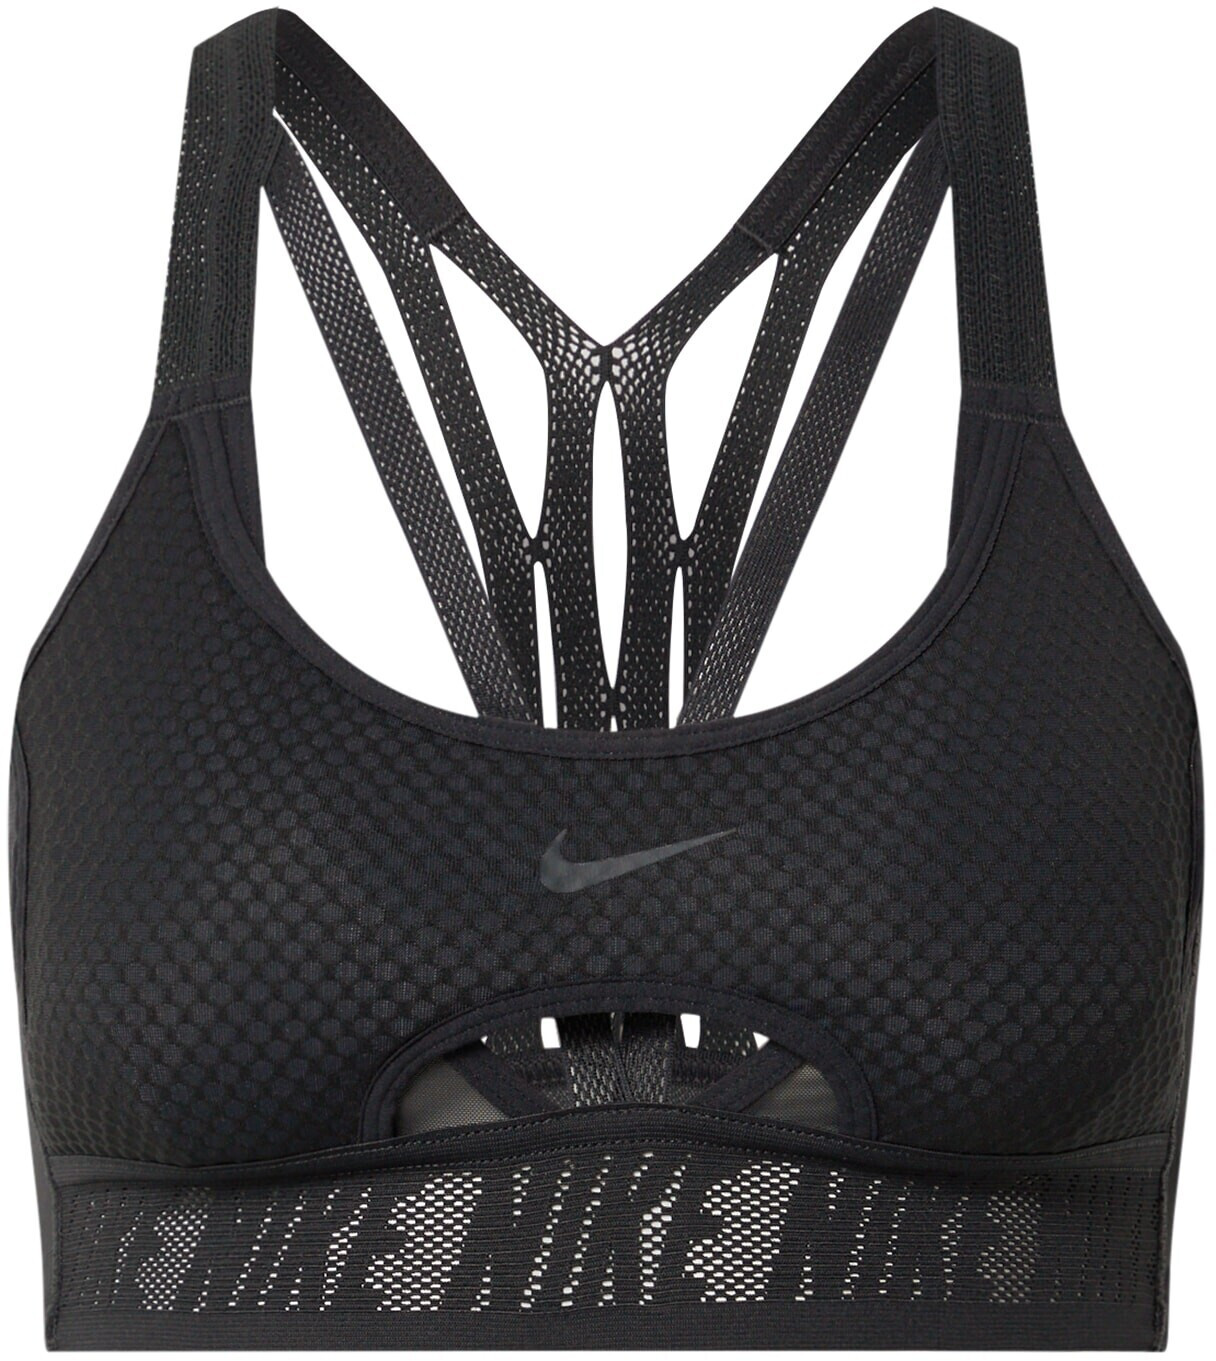 Buy Nike FE/NOM Flyknit Sports-Bra from £8.00 (Today) – Best